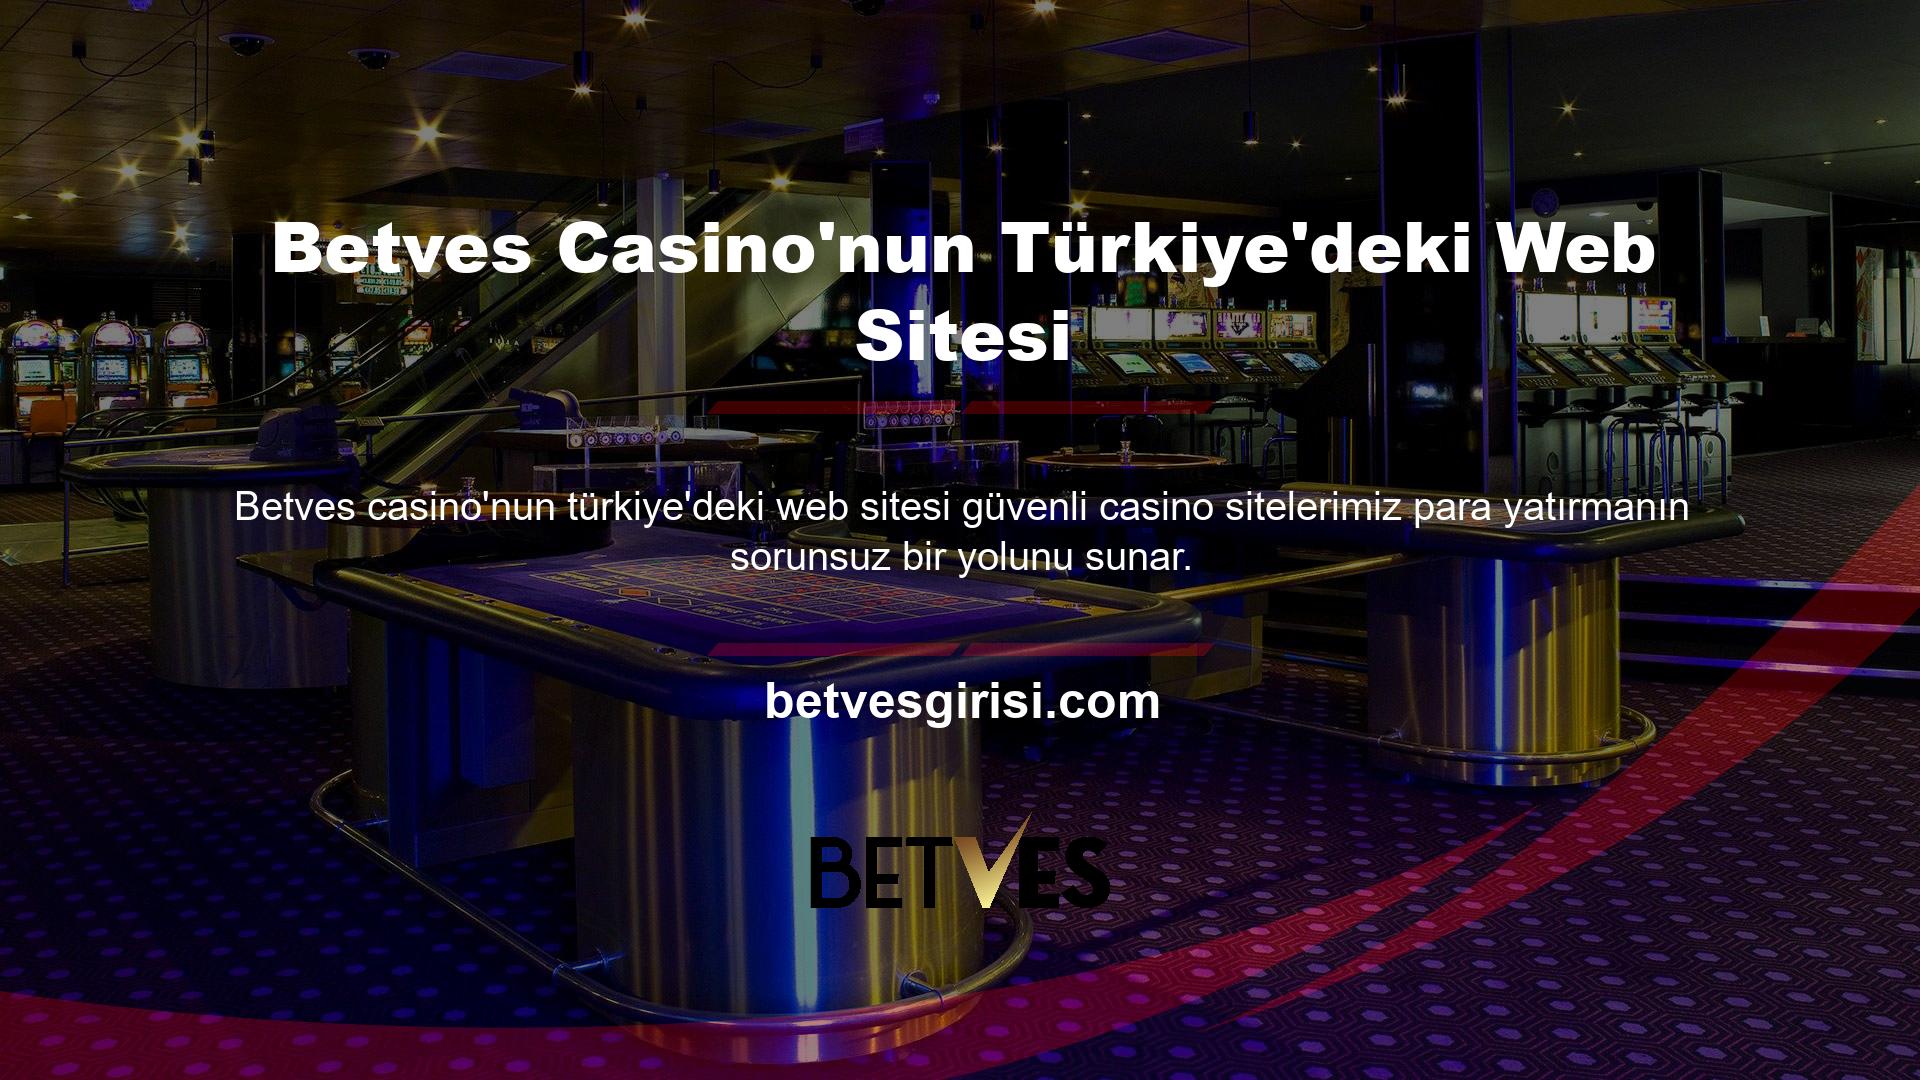 Üye olduktan sonra Türk casino sitelerine para yatırma adımları nelerdir? Sorunuzu cevaplamak zor değil